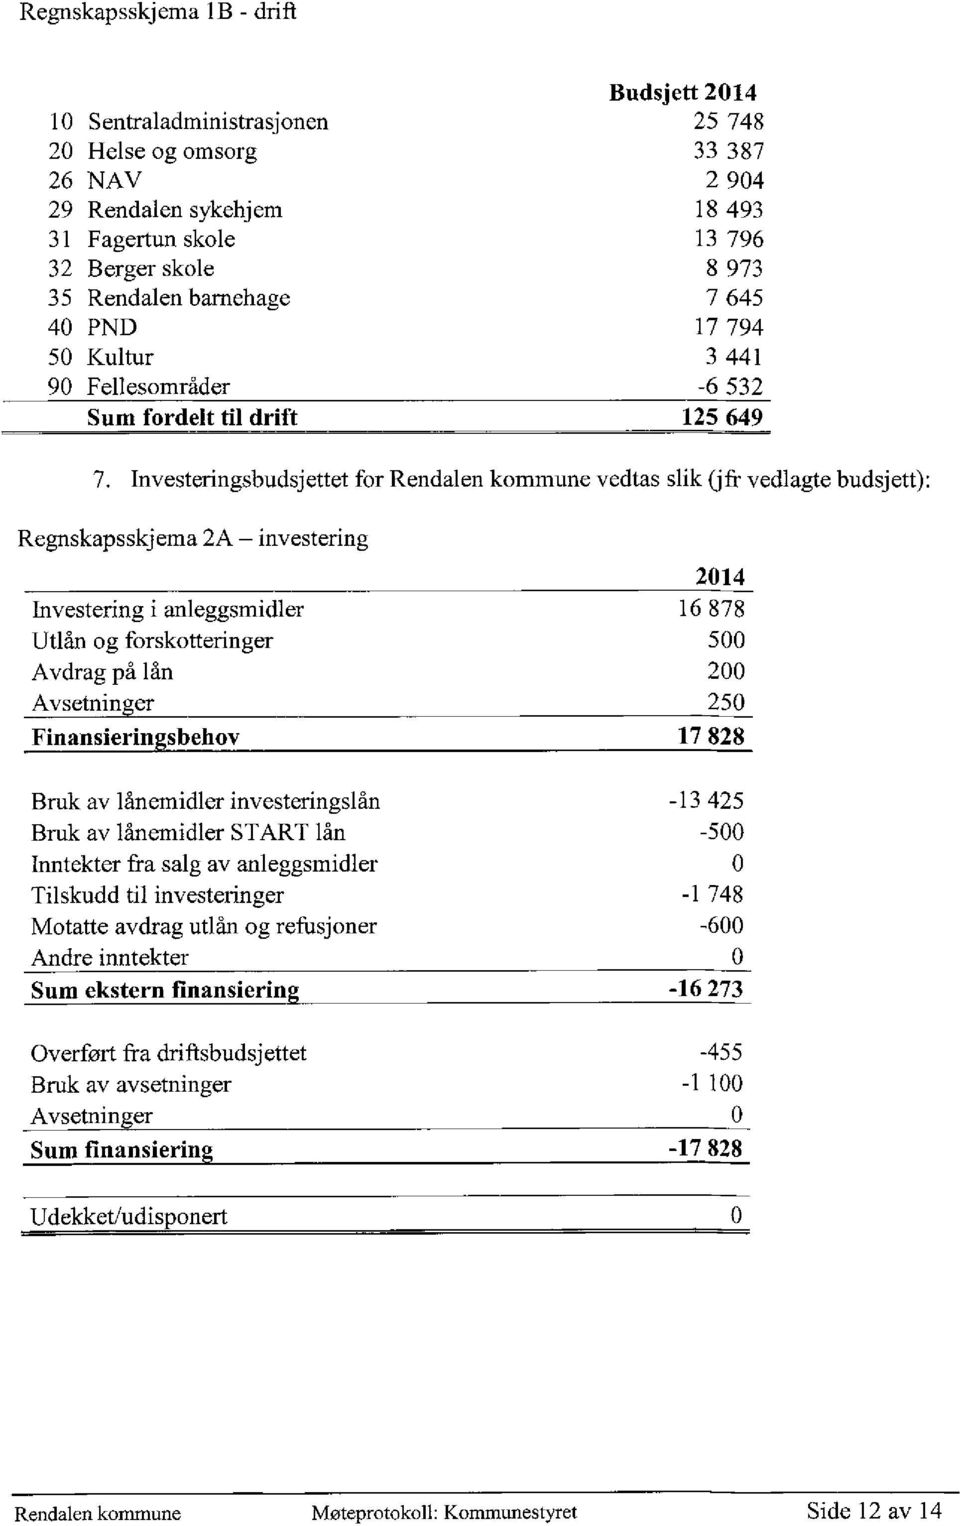 Investeringsbudsjettet for Rendalen kommune vedtas slik (jfr vedlagte budsjett): Regnskapsskjema 2A investering 2014 Investering i anleggsmidler 16 878 Utlån og forskotteringer 500 Avdrag på lån 200